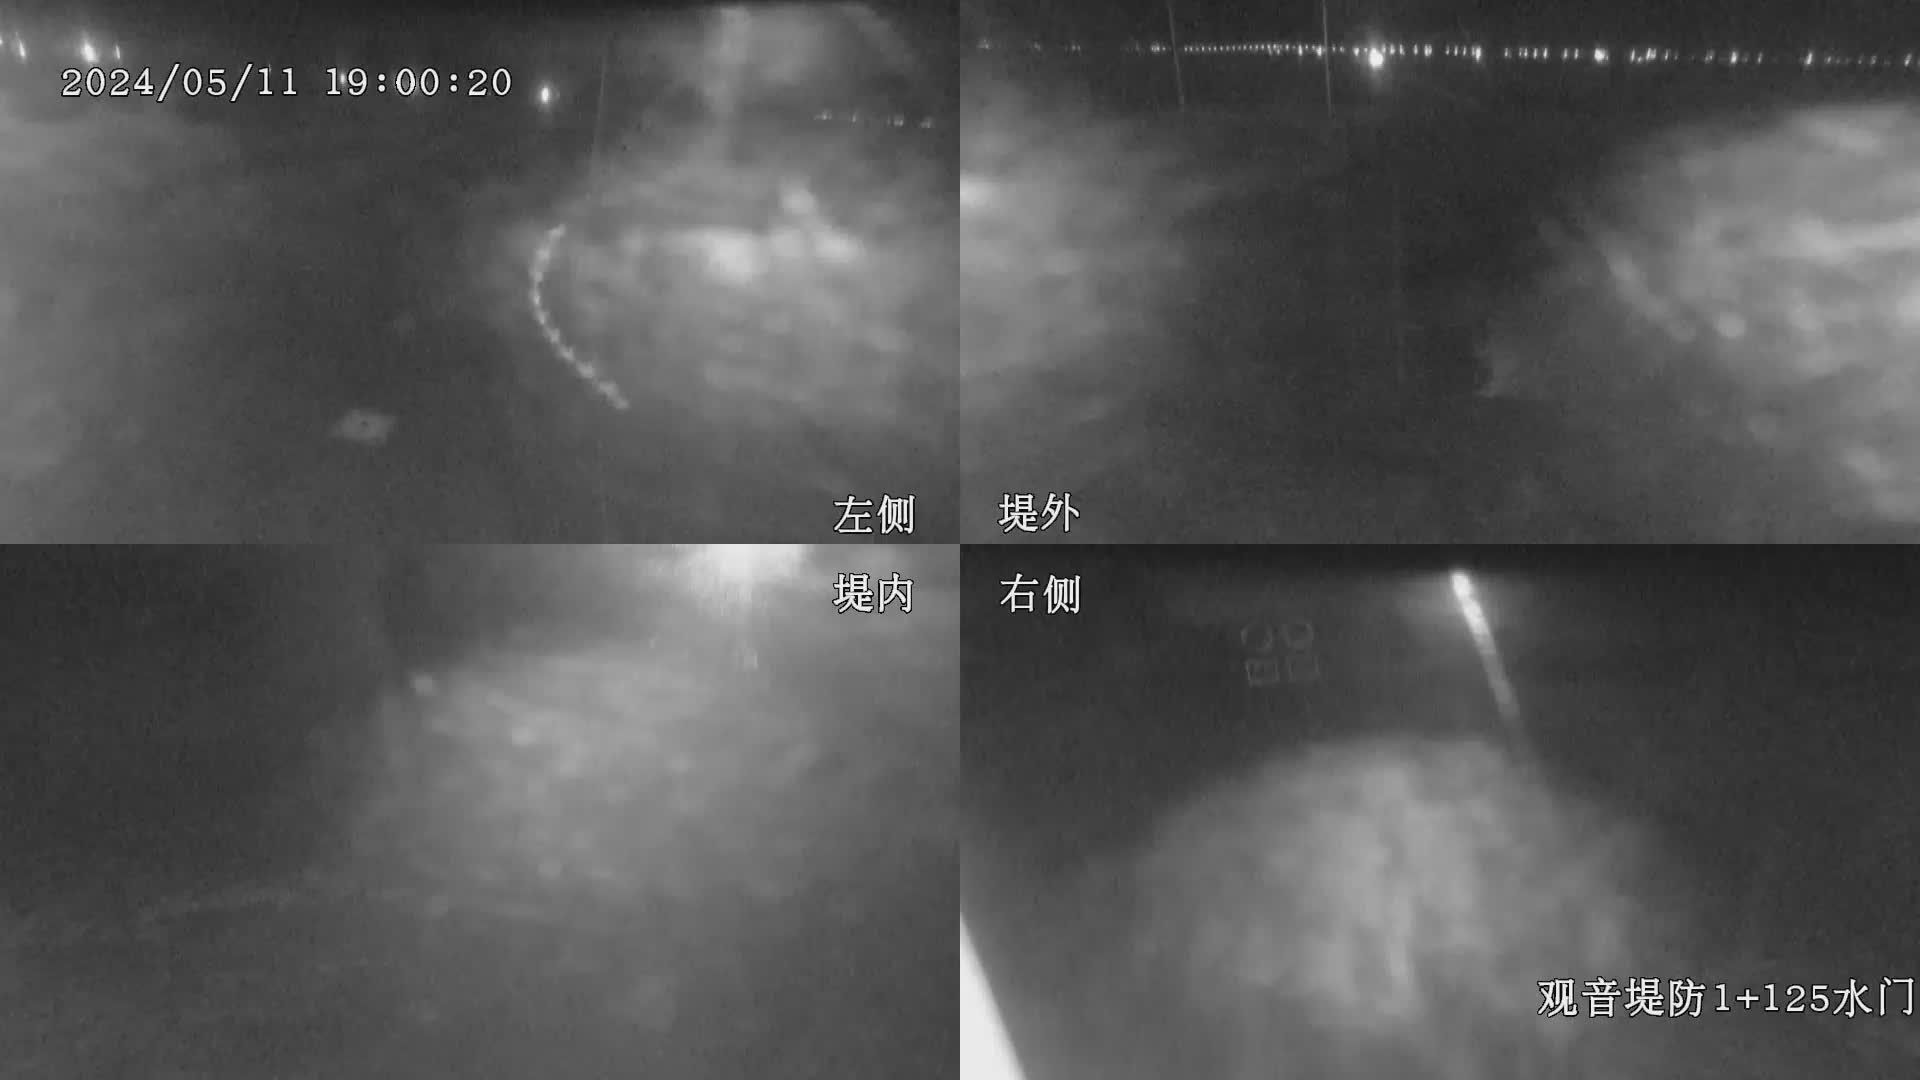 水利署水資源  九河局 觀音堤防1+125水門 全景攝影機 距離12.7公里 氣溫18.3度